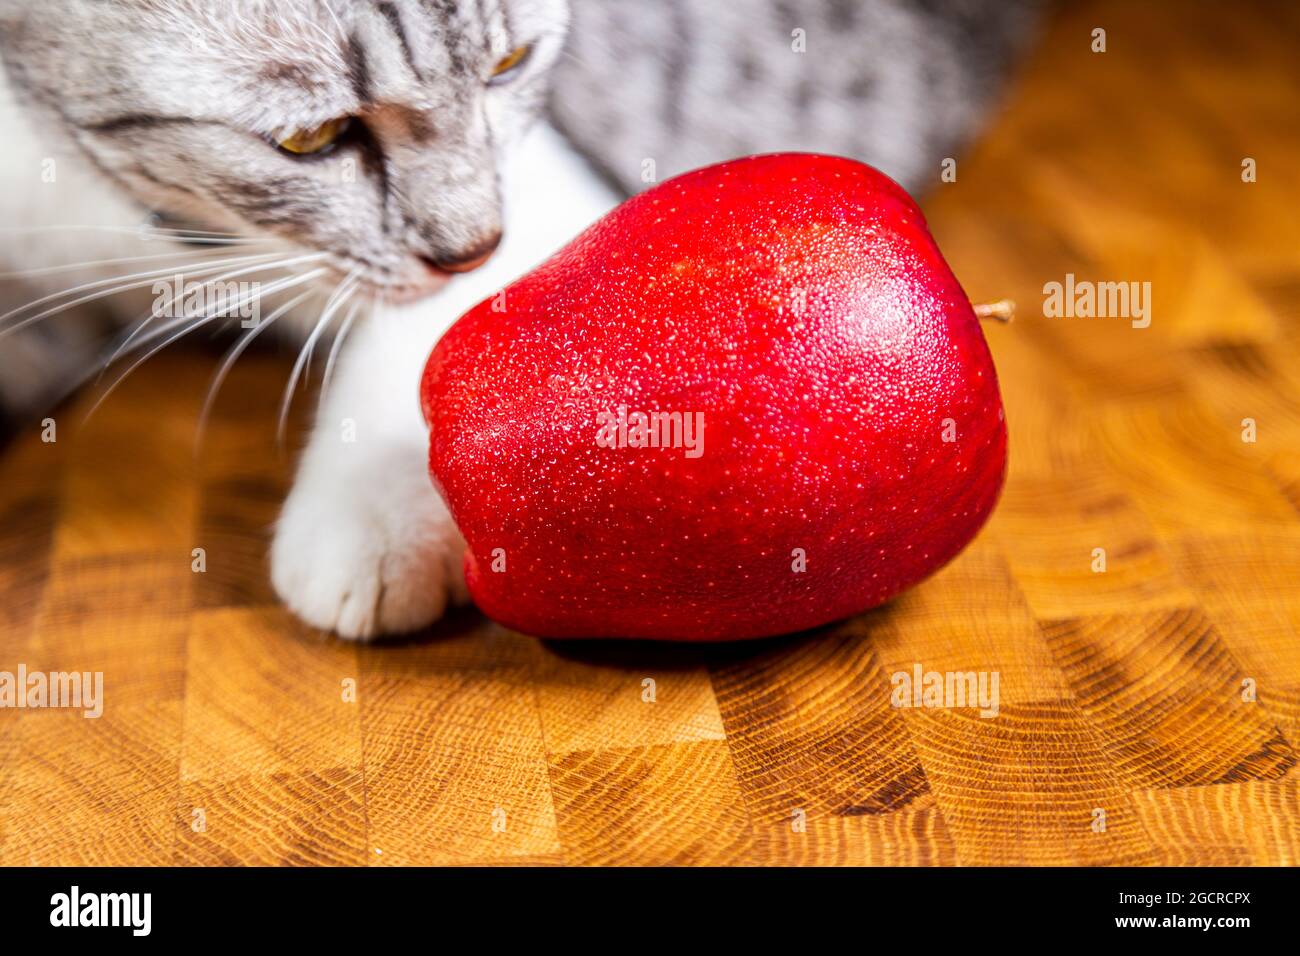 Junge Katze sieht zu einem roten Apfel aus. Kätzchen verstörende Makrofotografie-Session. Nahaufnahme eines roten Weihnachtsapfels und eines Katzengesichts Stockfoto